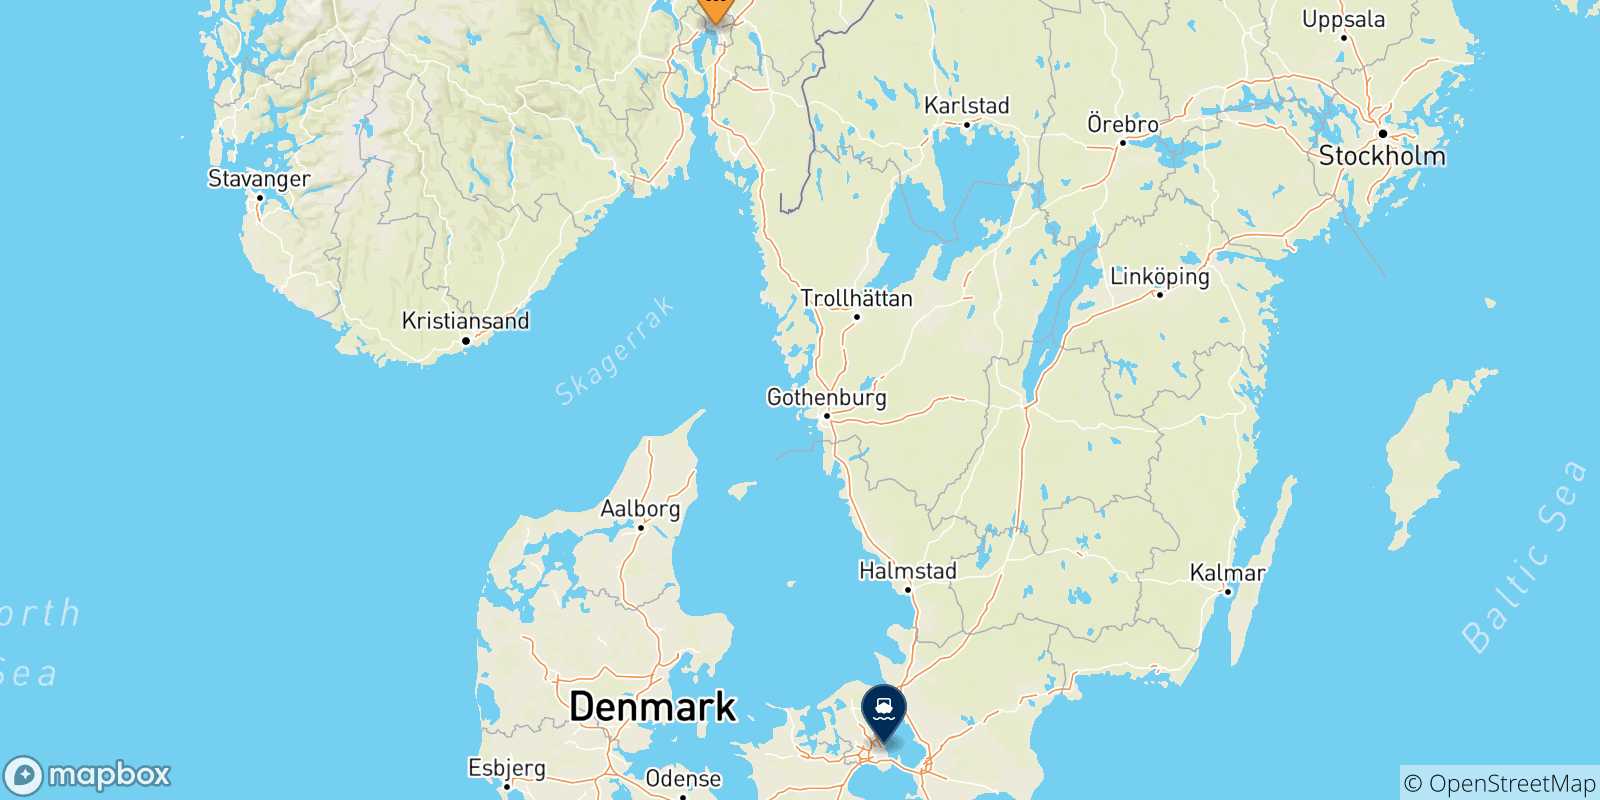 Mappa delle possibili rotte tra la Norvegia e Copenhagen